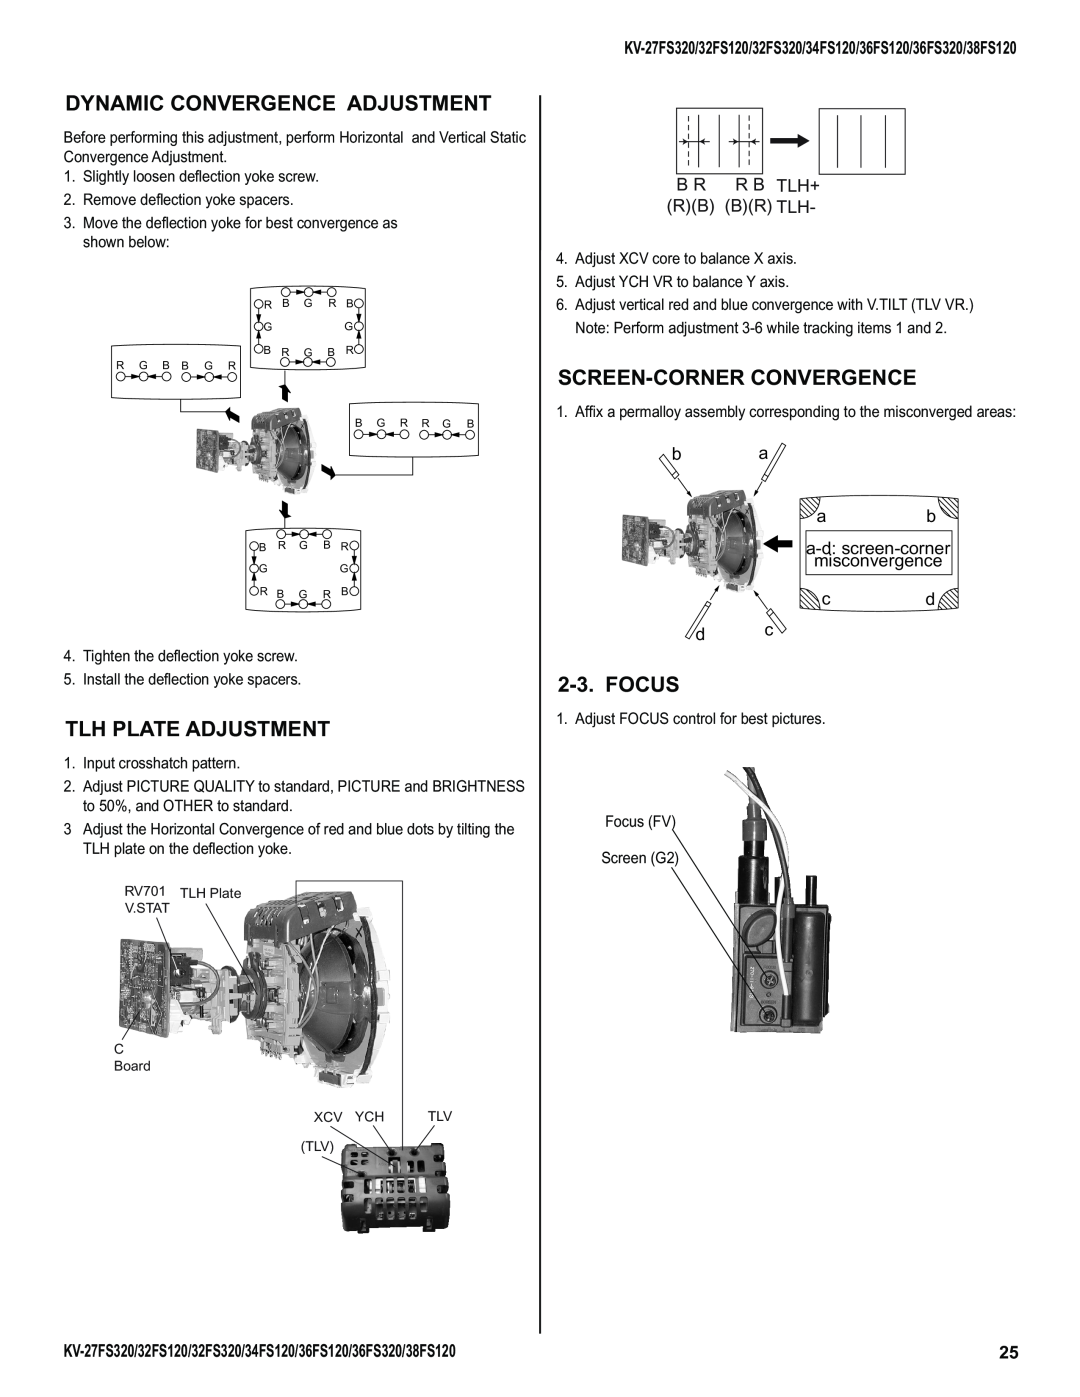 Sony KV-38FS120, KV-32FS320 Dynamic Convergence Adjustment, Screen-Corner Convergence, Tlh Plate Adjustment, Focus 